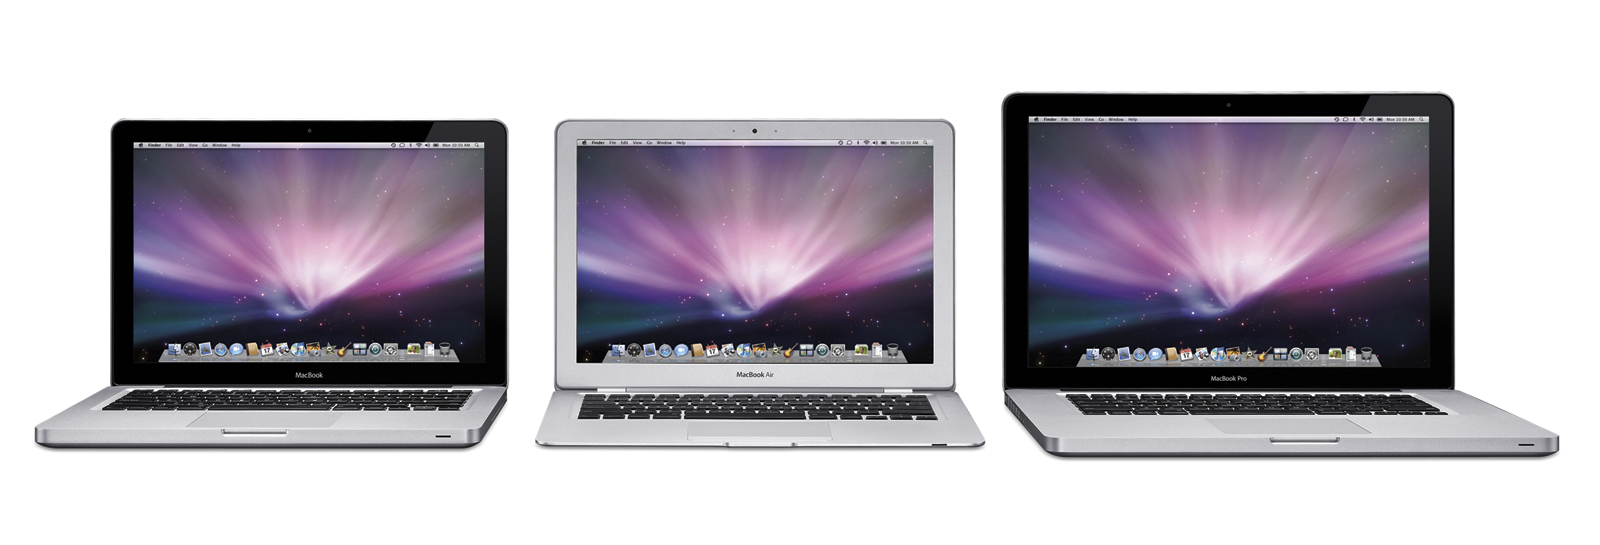 Review Apple MacBook Aluminium (Unibody, 13, 9400M.